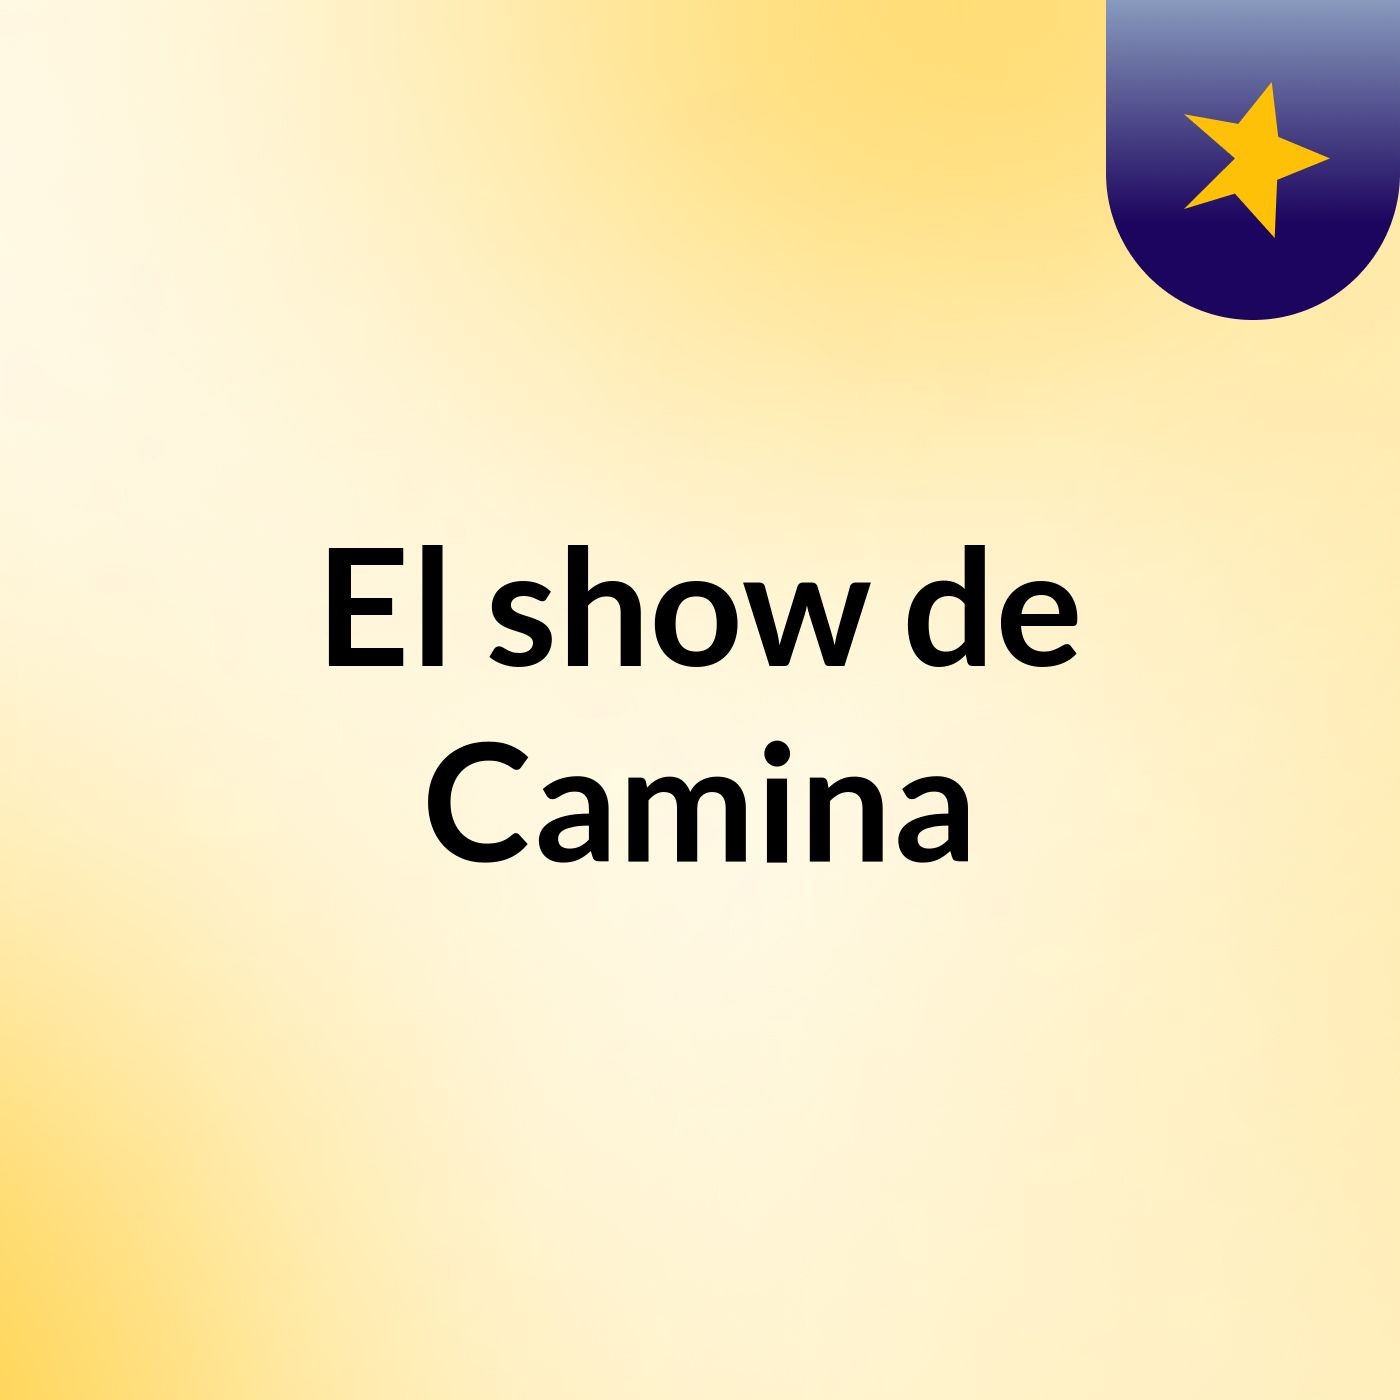 El show de Camina